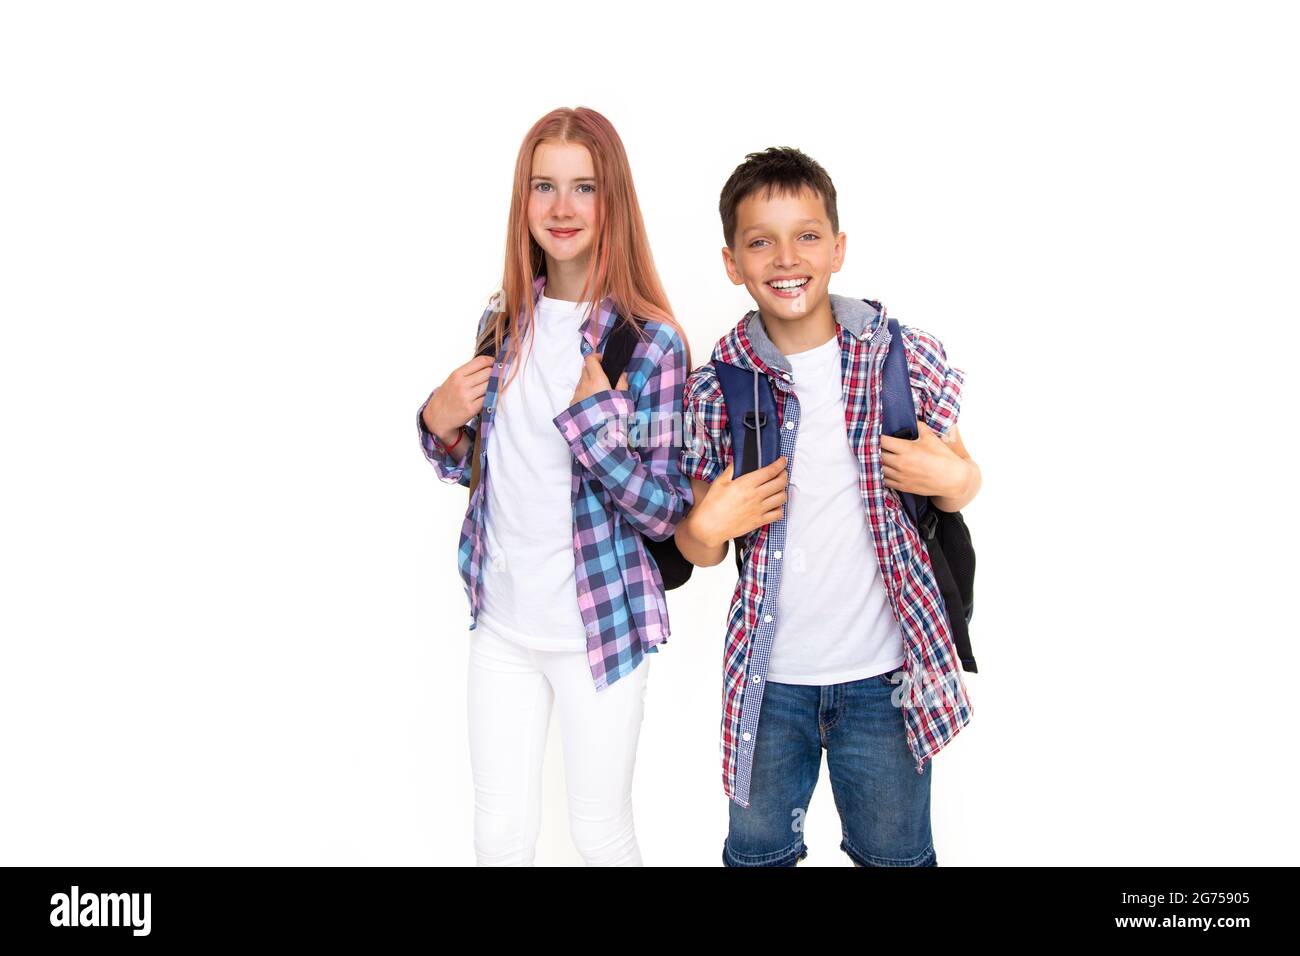 Junge und Mädchen Teenager 11 Jahre alt Schuljunge und Schülerin Blick auf die Kamera auf weißem Hintergrund mit Rucksack und lächelnd. In kariertes Hemd gekleidet, w Stockfoto